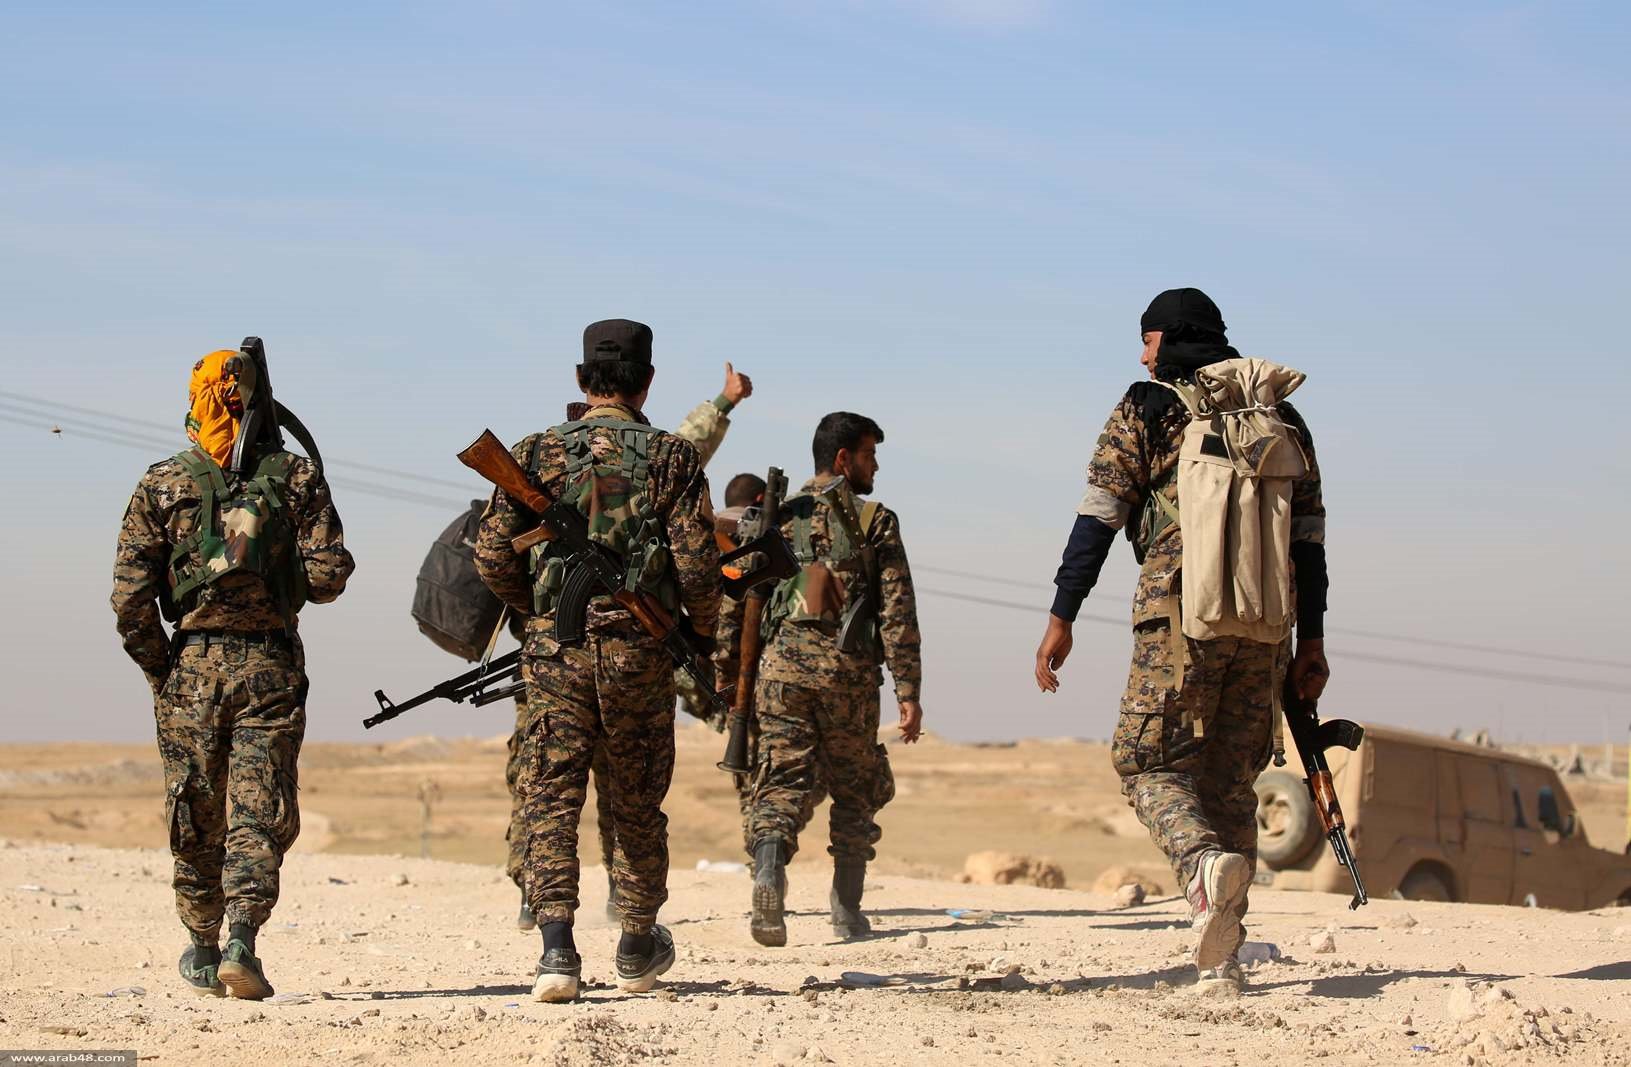 قناصة غربيون يحاربون ضد داعش في الرقة.. ماذا فعلوا؟